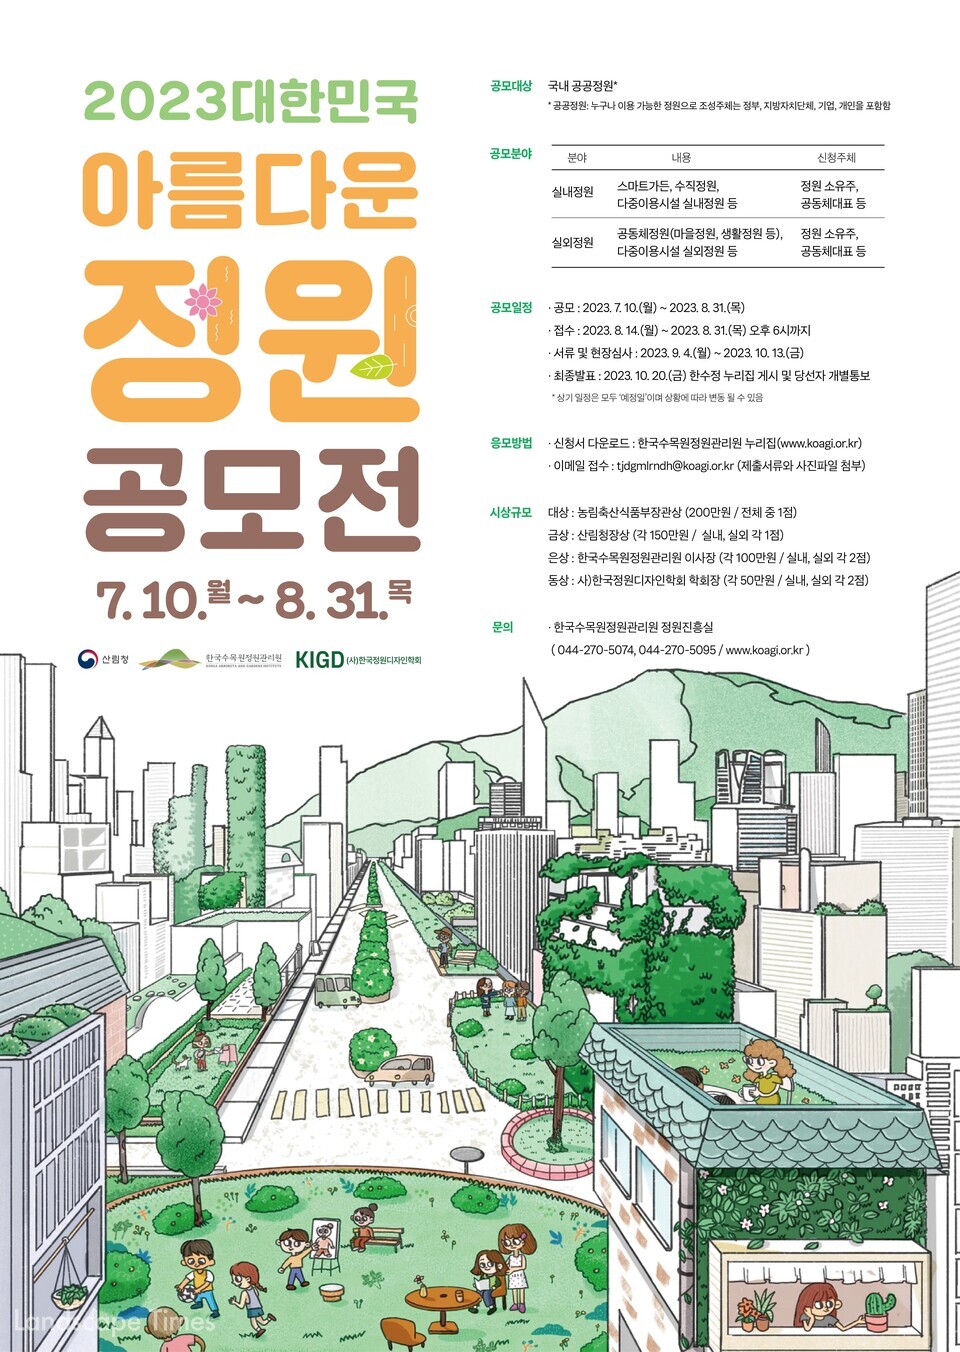 2023 대한민국 아름다운 정원 공모전 포스터 ⓒ한수정